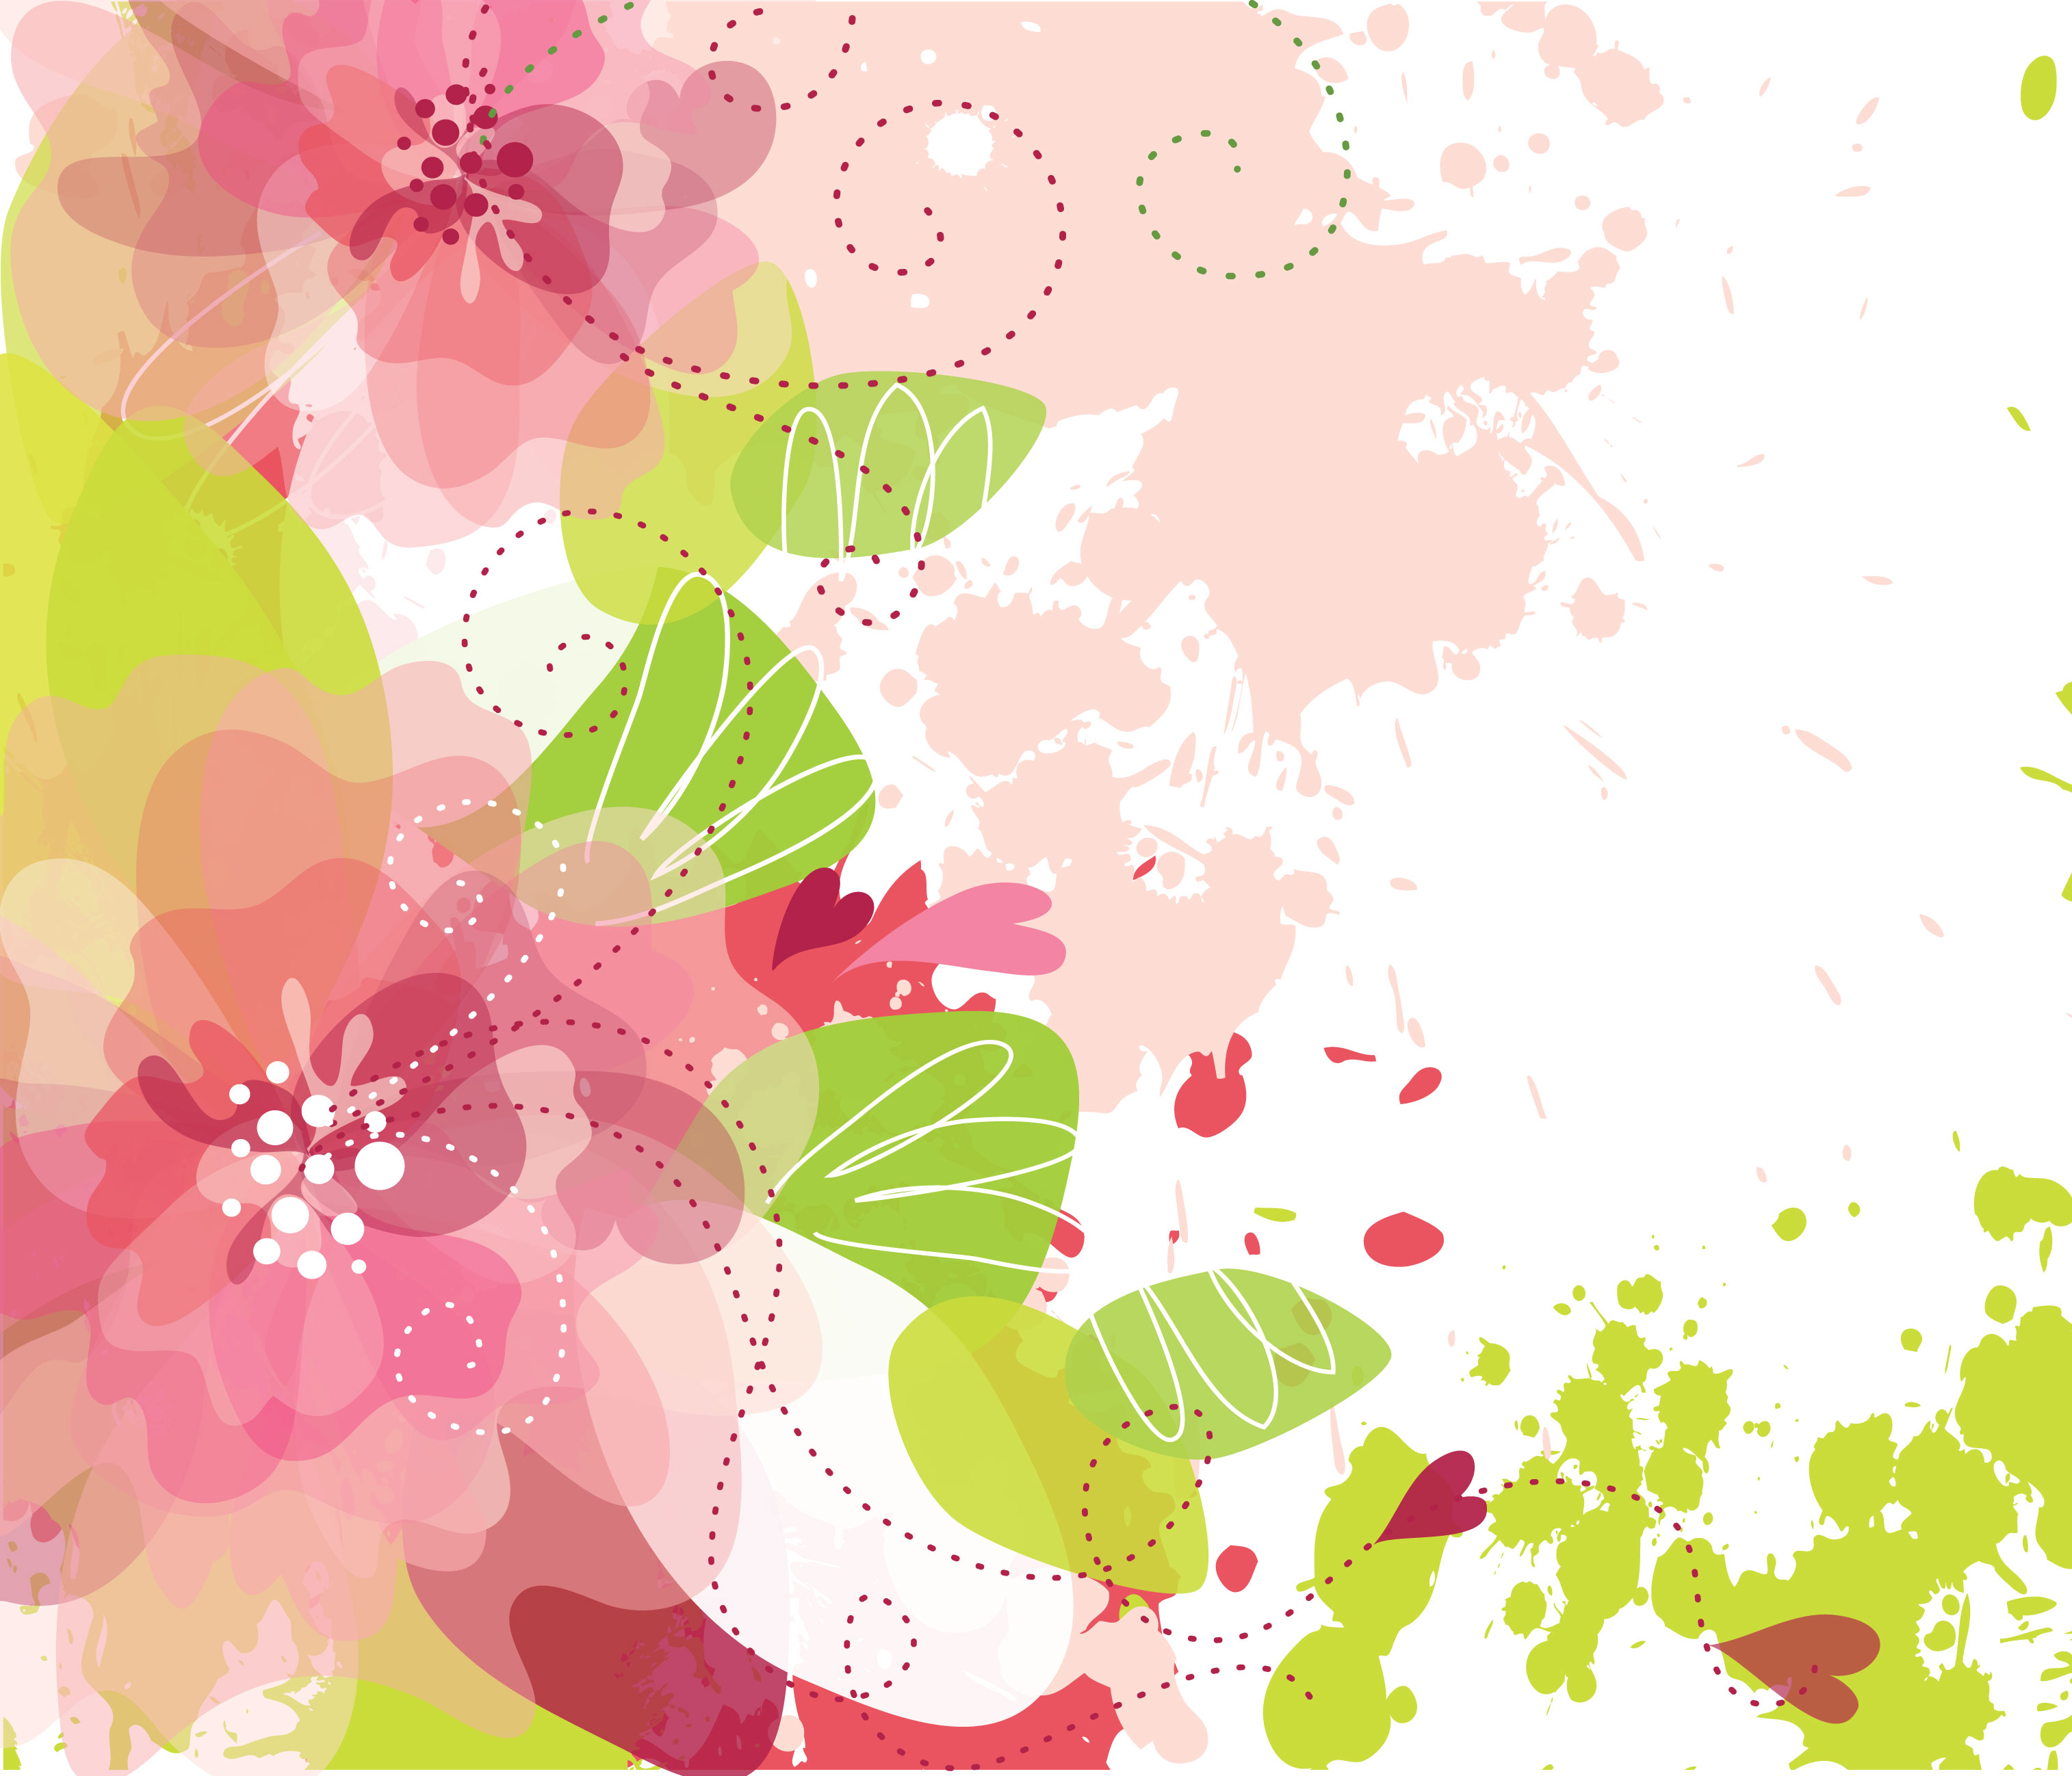 ピンクの花のイラスト フリー素材 壁紙 背景no 640 赤ピンク 緑葉 塗料